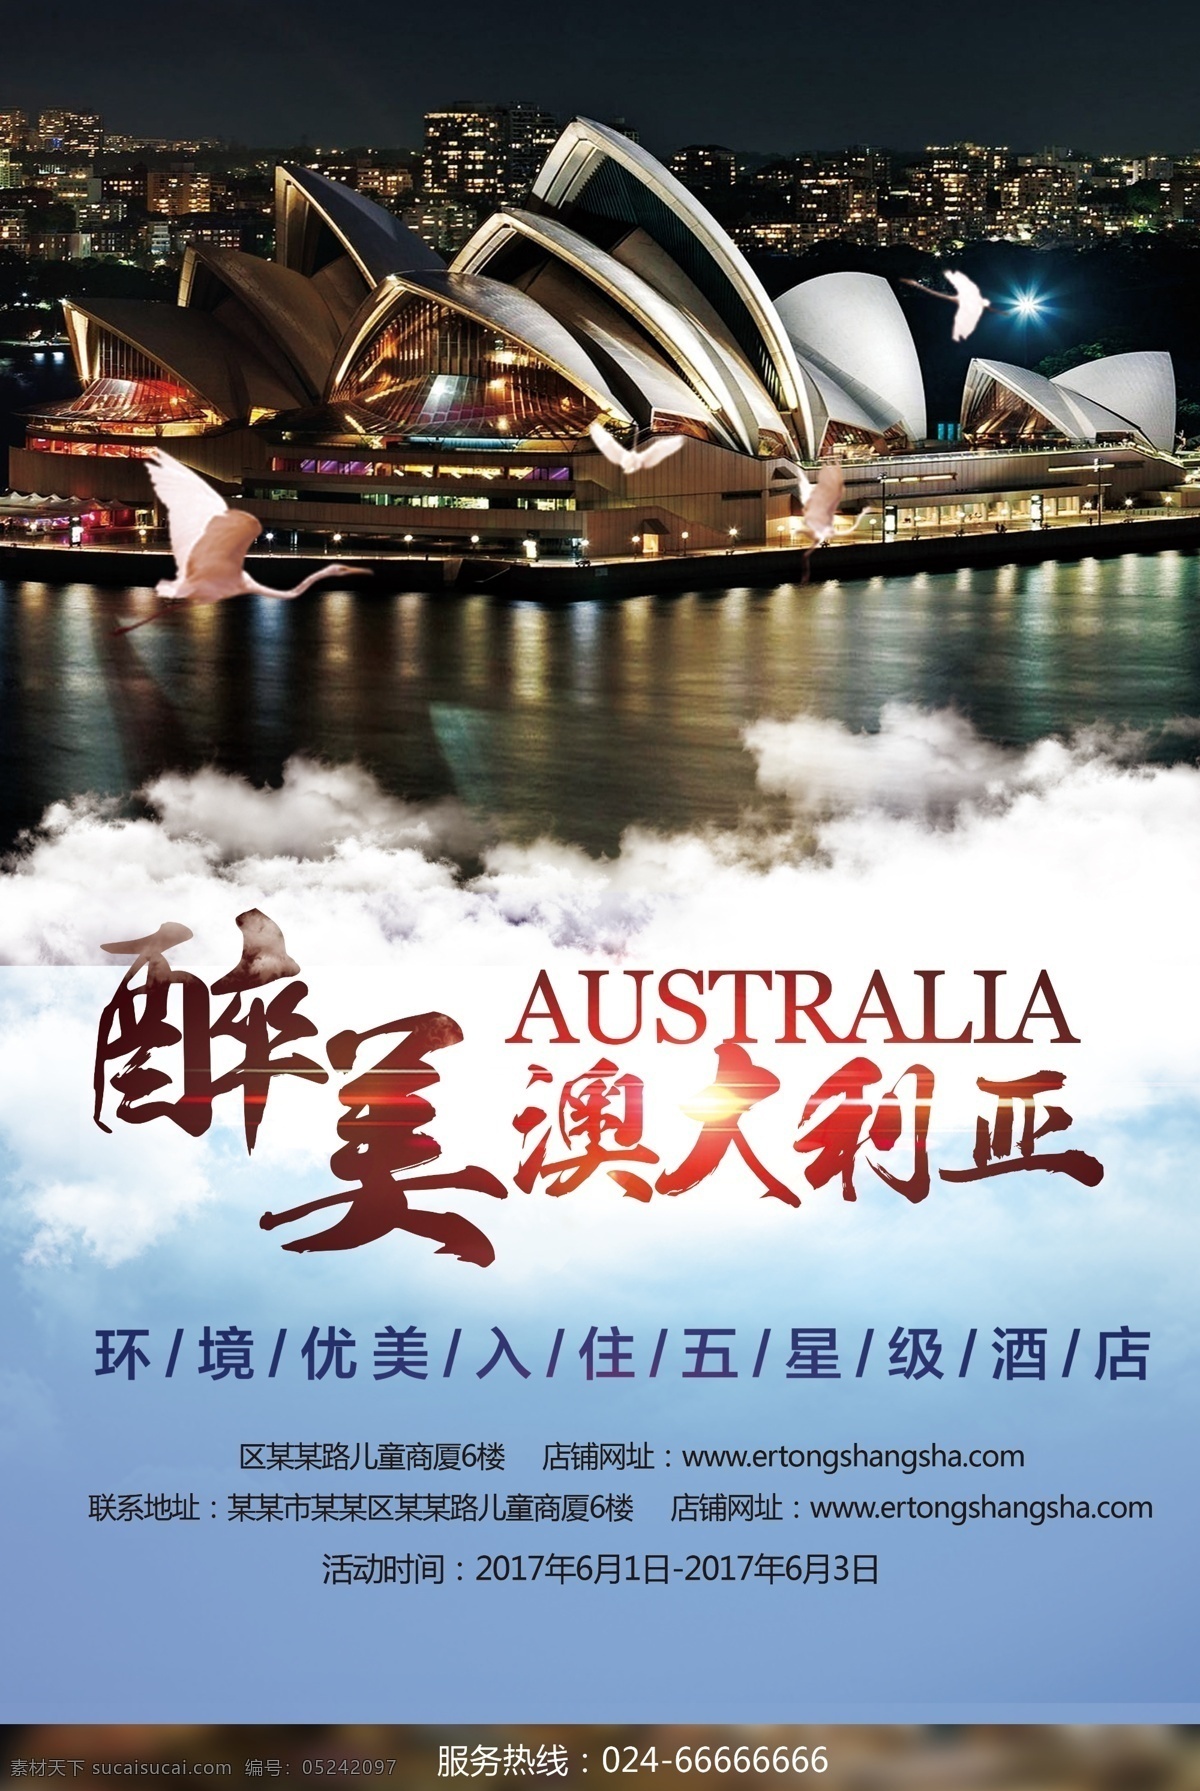 醉 美 澳大利亚 旅游 海报 旅游宣传海报 旅游海报素材 旅游海报广告 旅游广告 旅游景点 澳大利亚风景 旅游海报 澳大利亚风情 度假